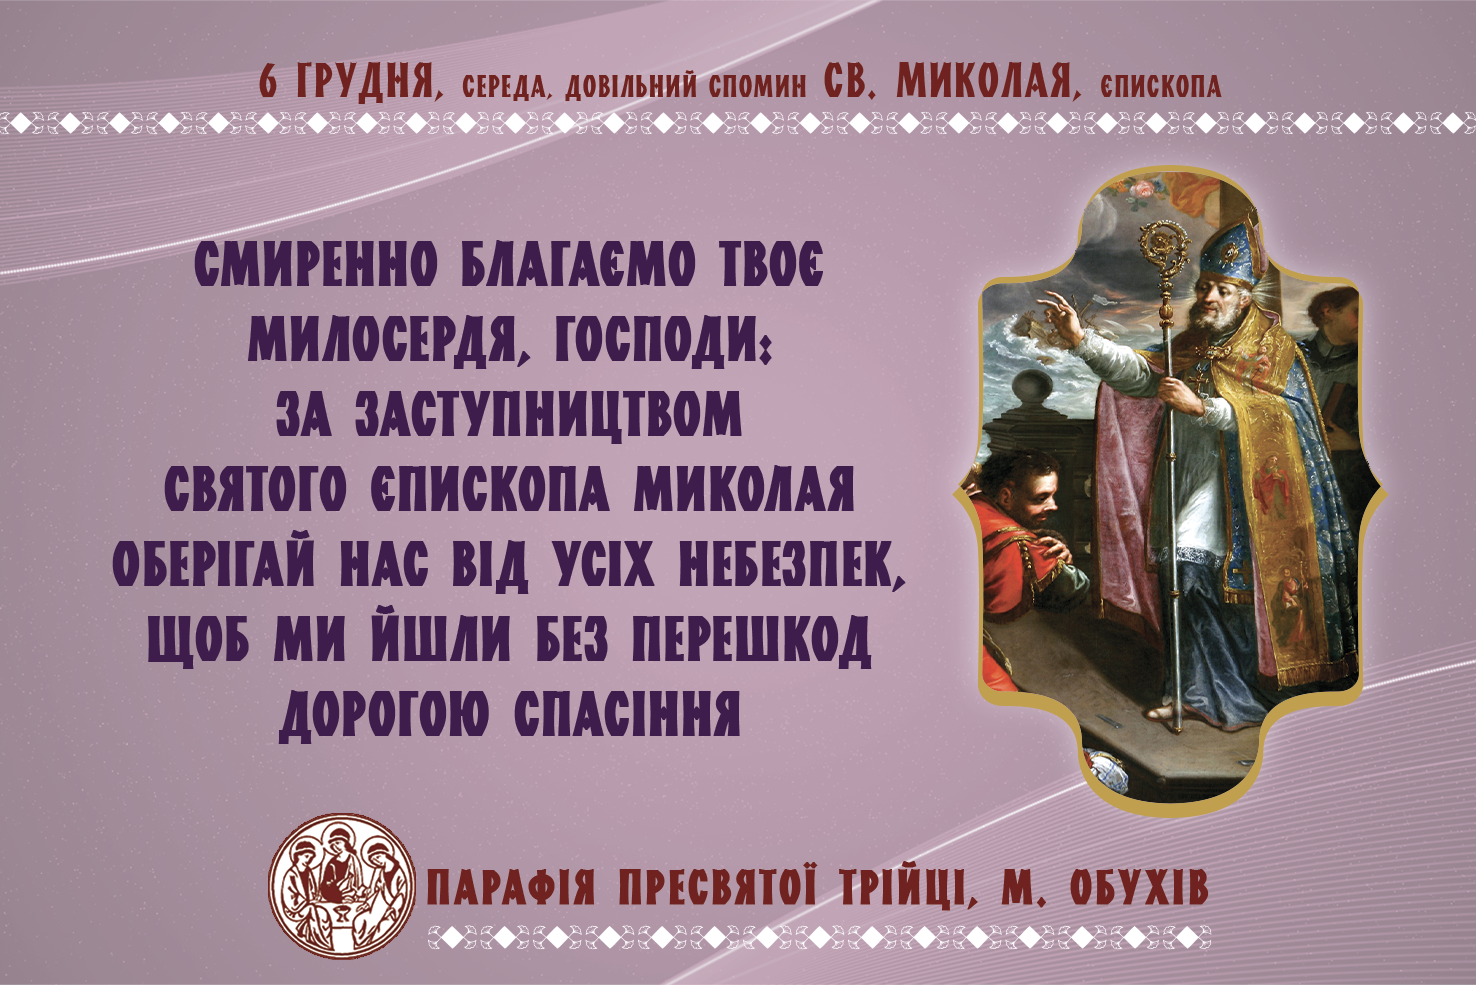 6 грудня, середа, довільний спомин св. Миколая, єпископа